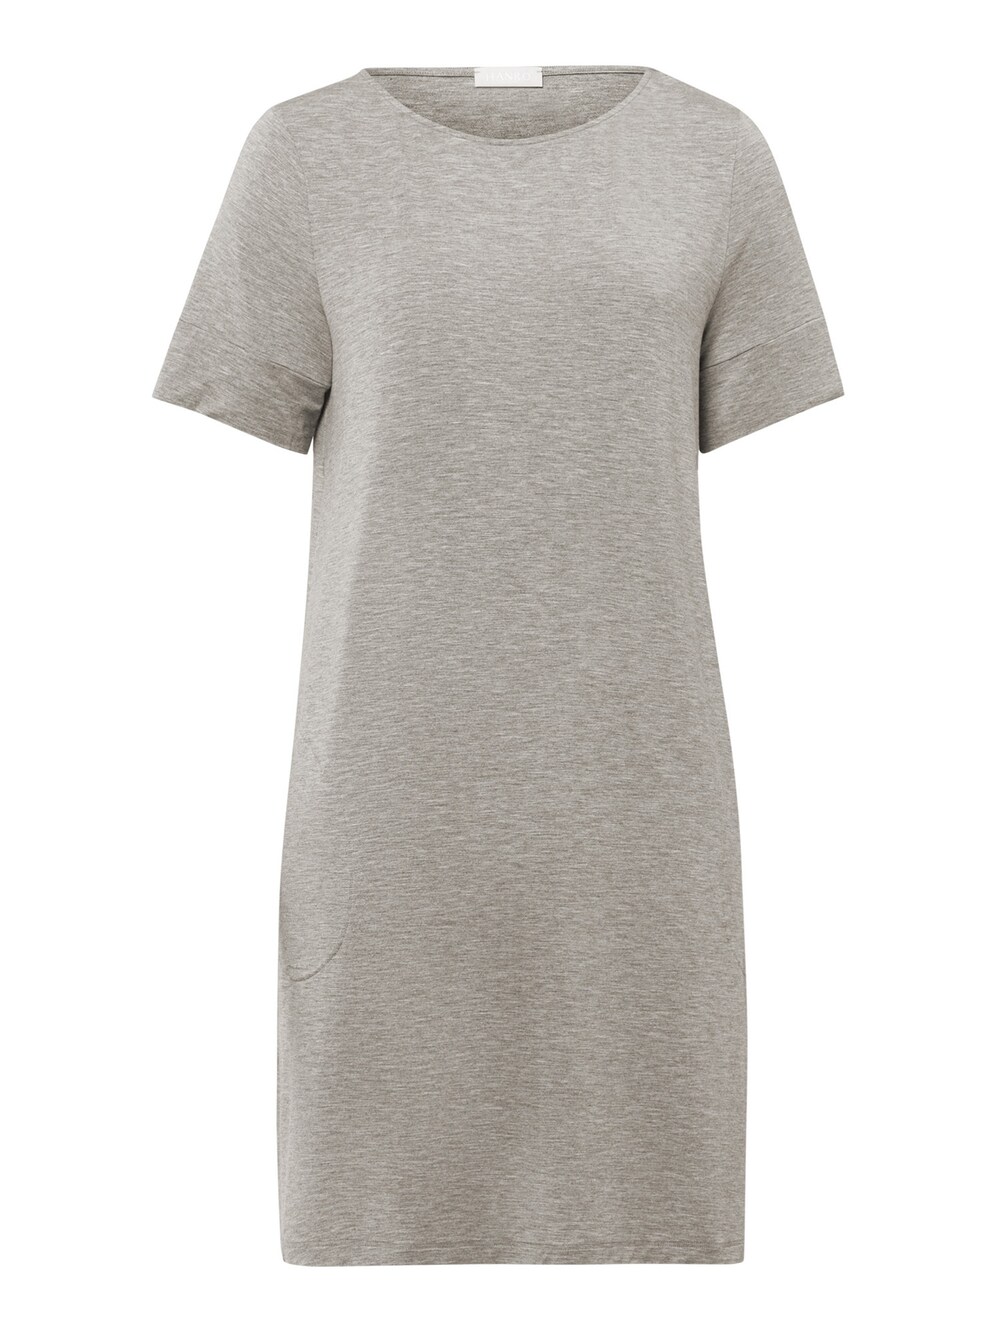 Ночная рубашка Hanro Natural Elegance, пестрый серый